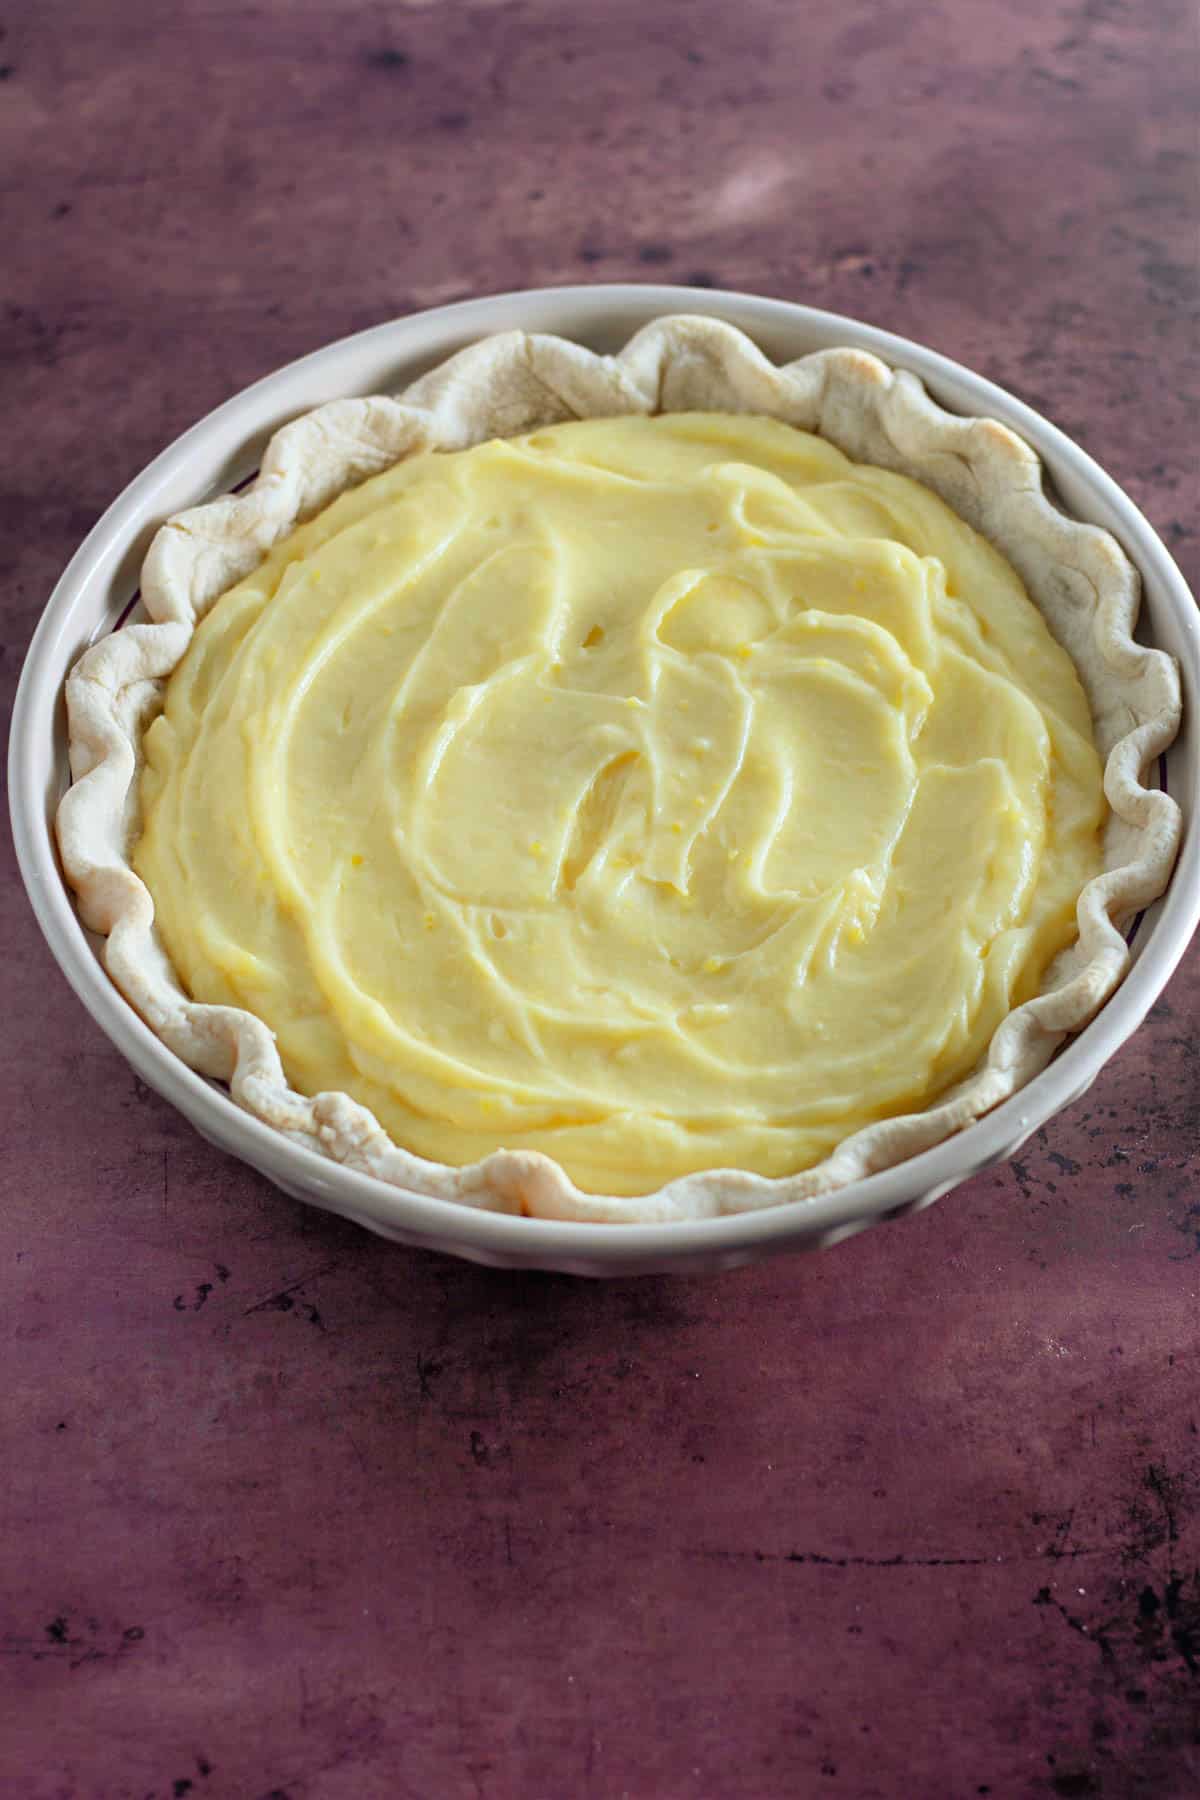 Creamy lemon pie filling in a baked pie shell. 